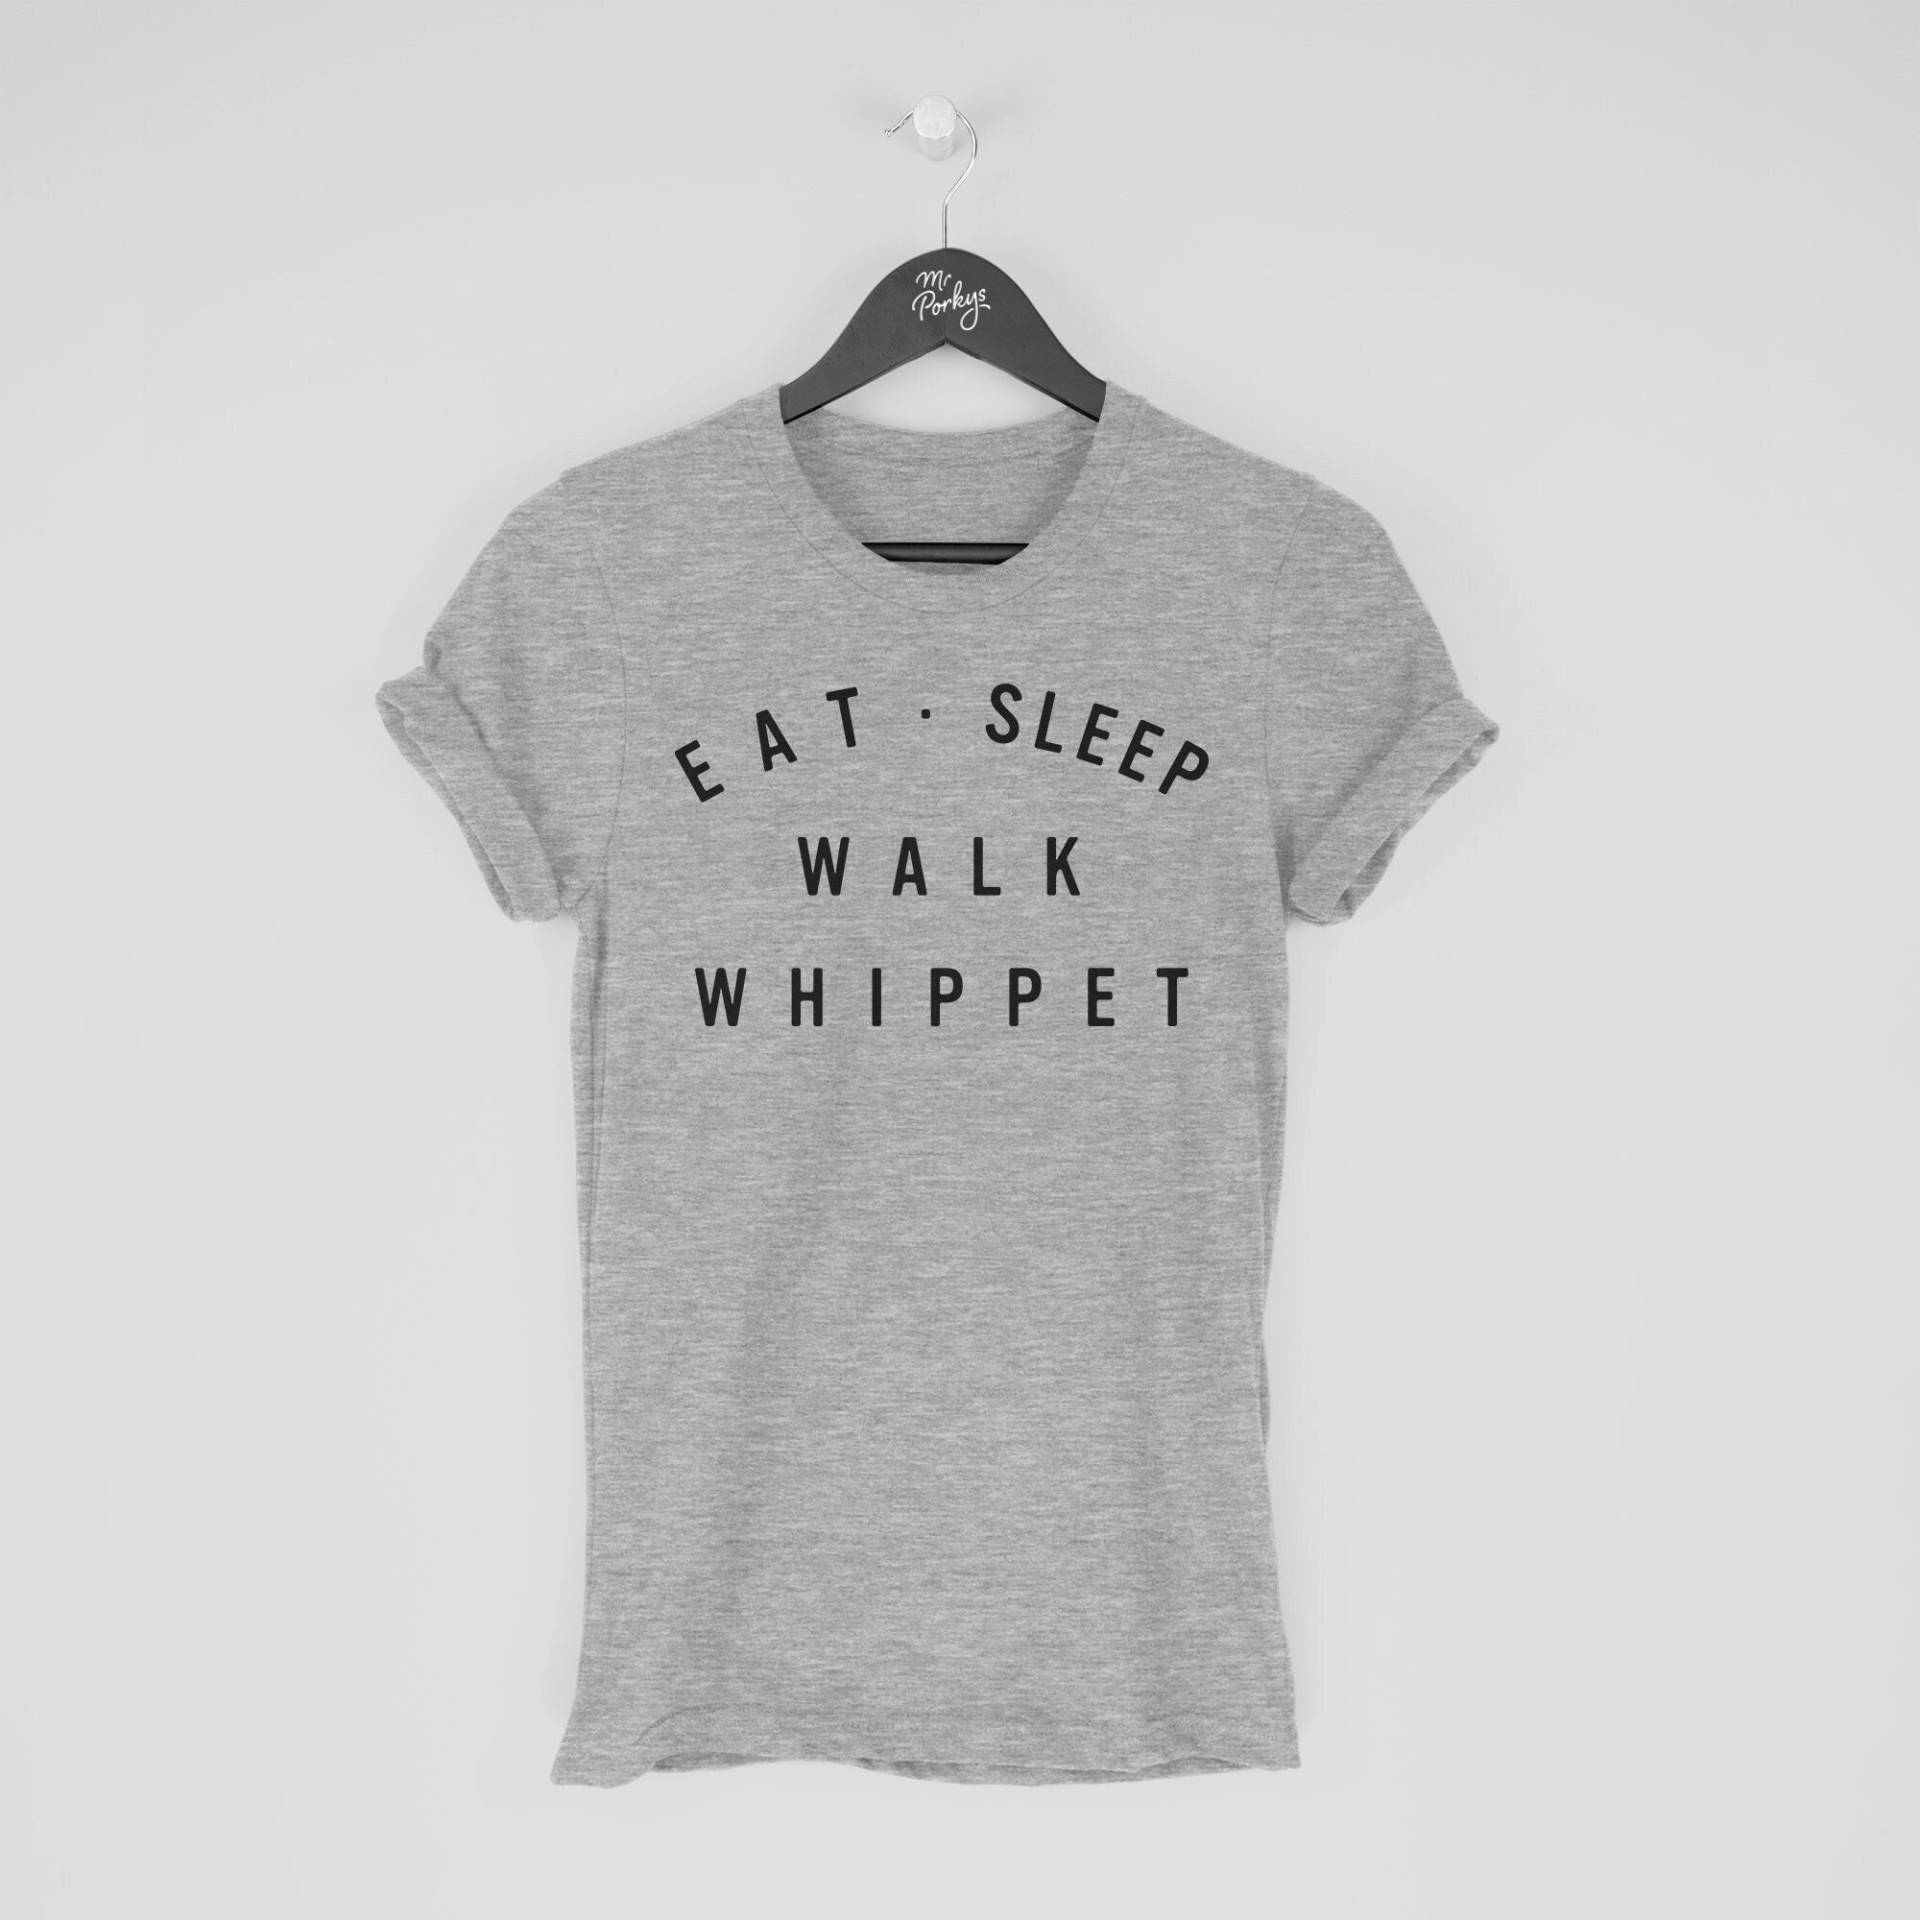 Whippet Shirt, Eat Sleep Walk T-Shirt, Geschenk Für Besitzer, Tshirt von MrPorkysGiftShop